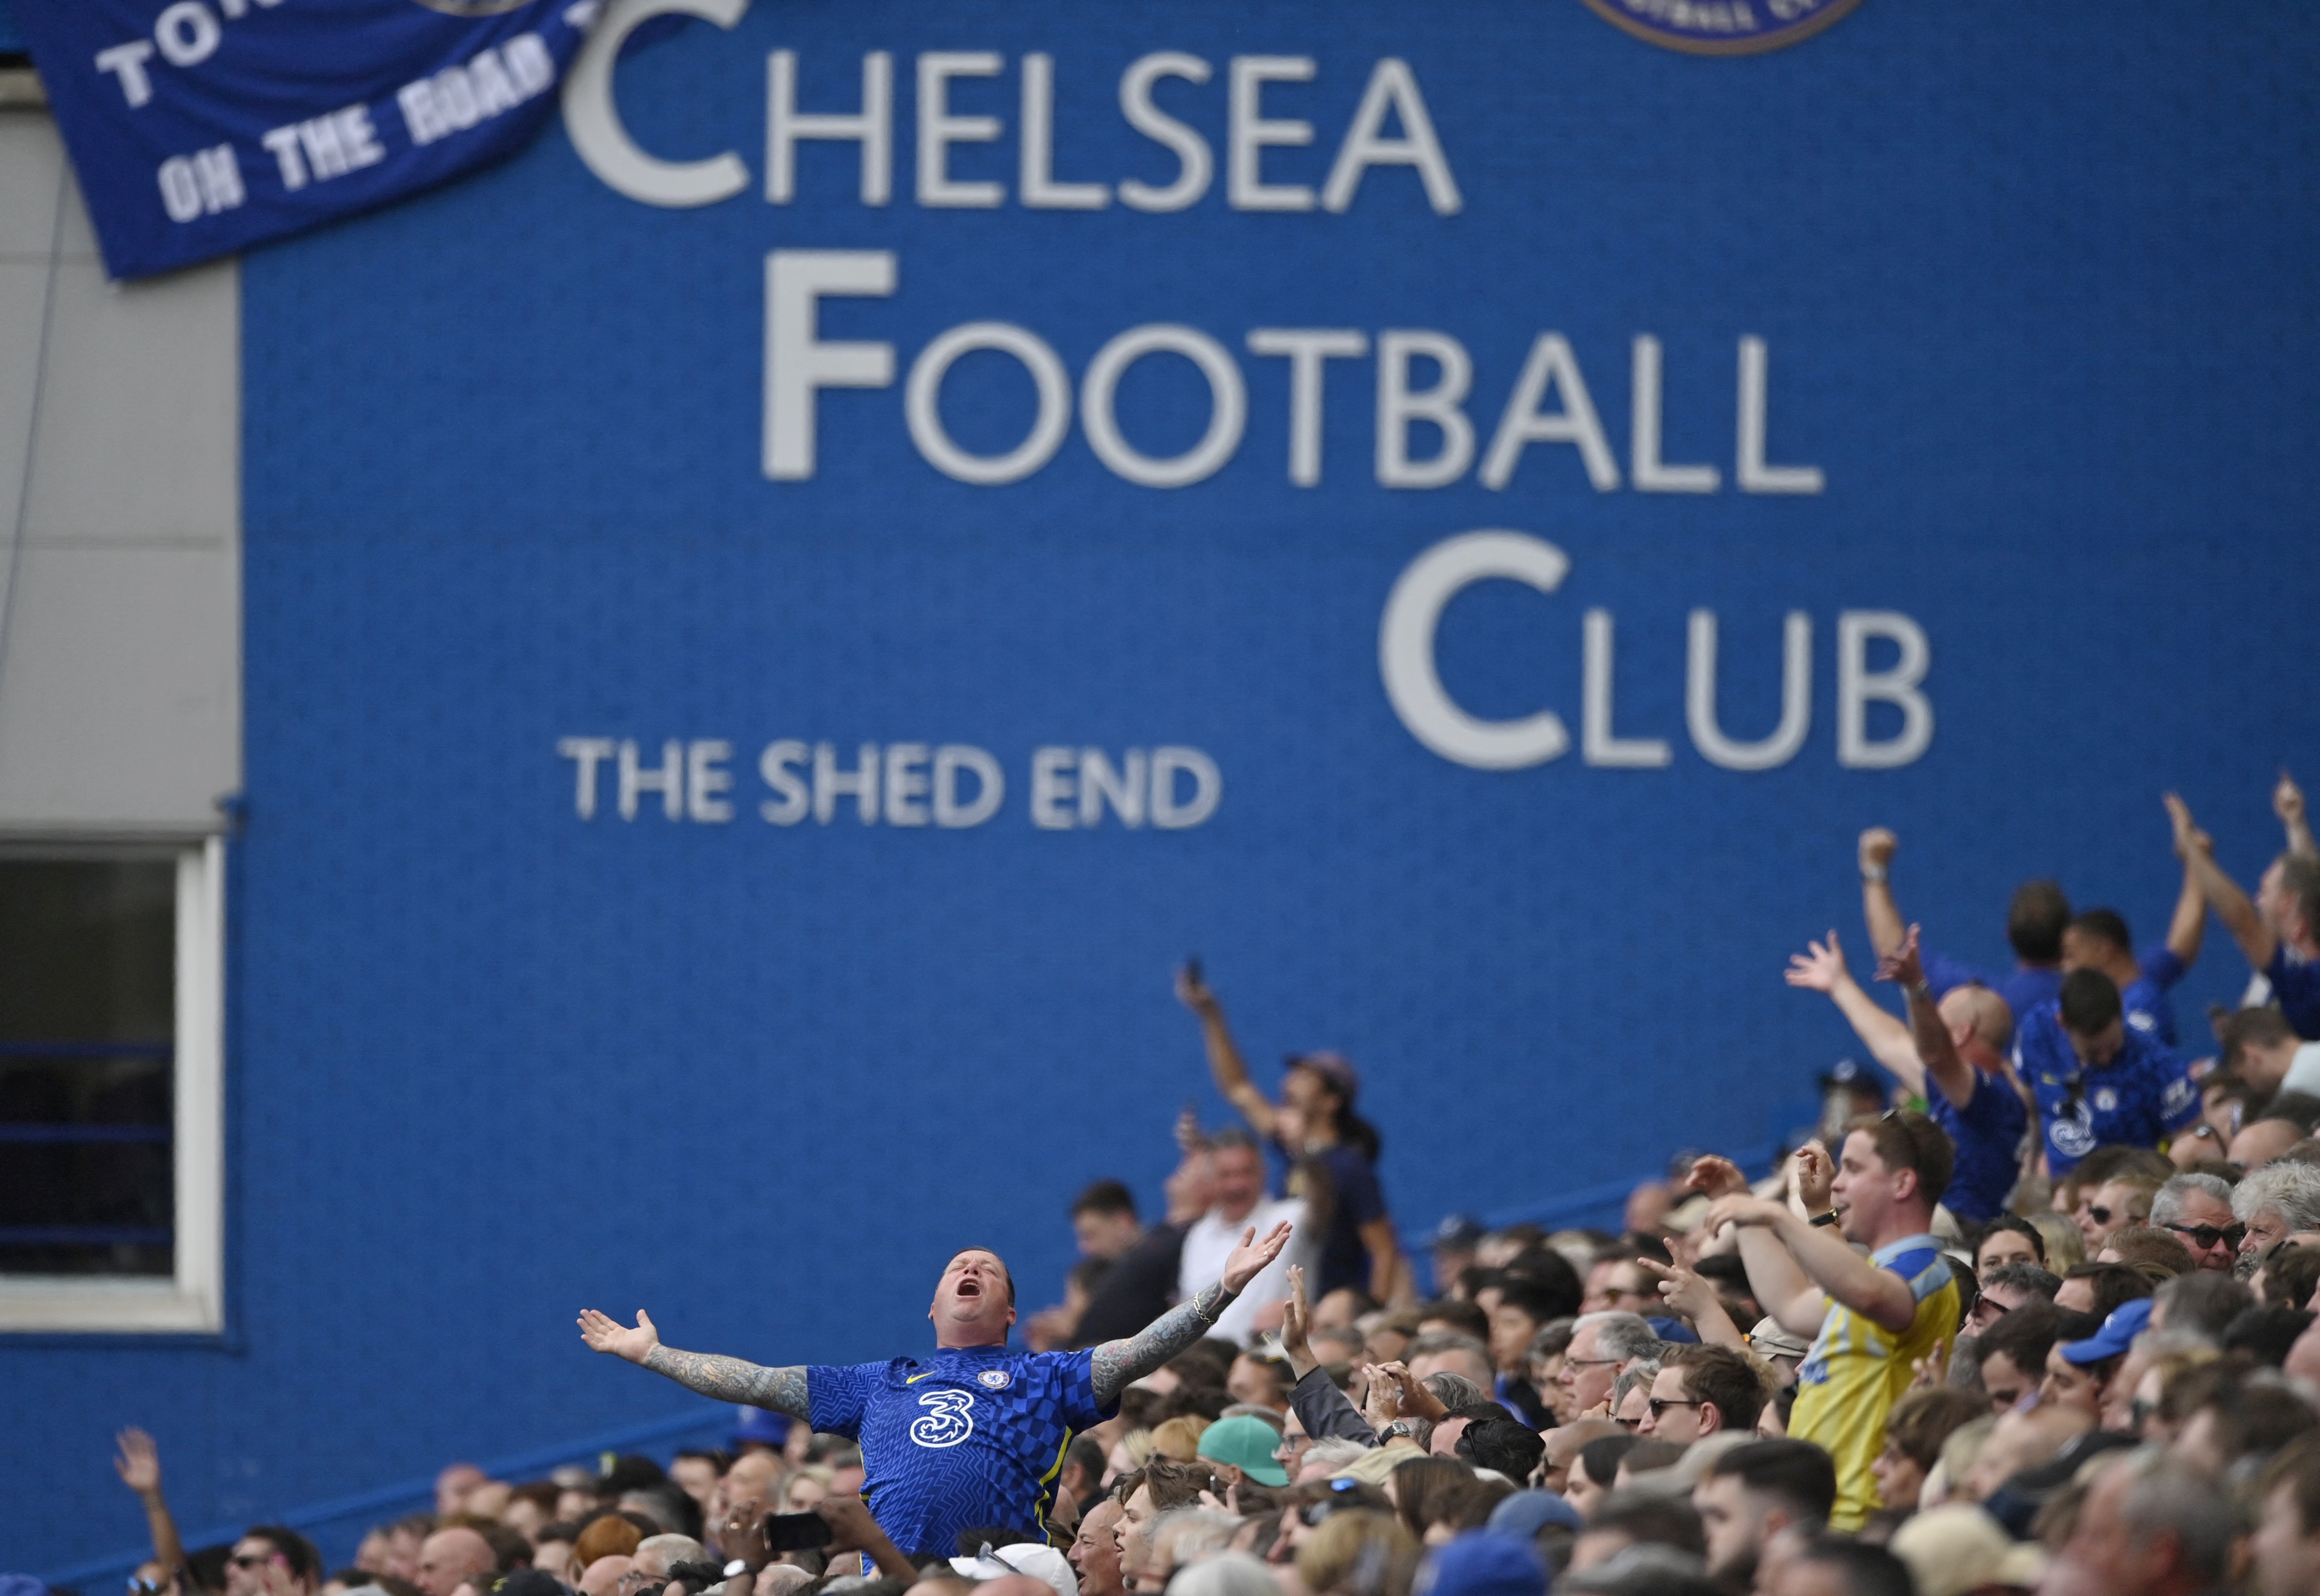 Chelsea, tercero en la Premier League esta temporada, necesita que se se apruebe la compra del club para que los nuevos dueños puedan negociar contratos con sus futbolistas y posibles refuerzos (Reuters)